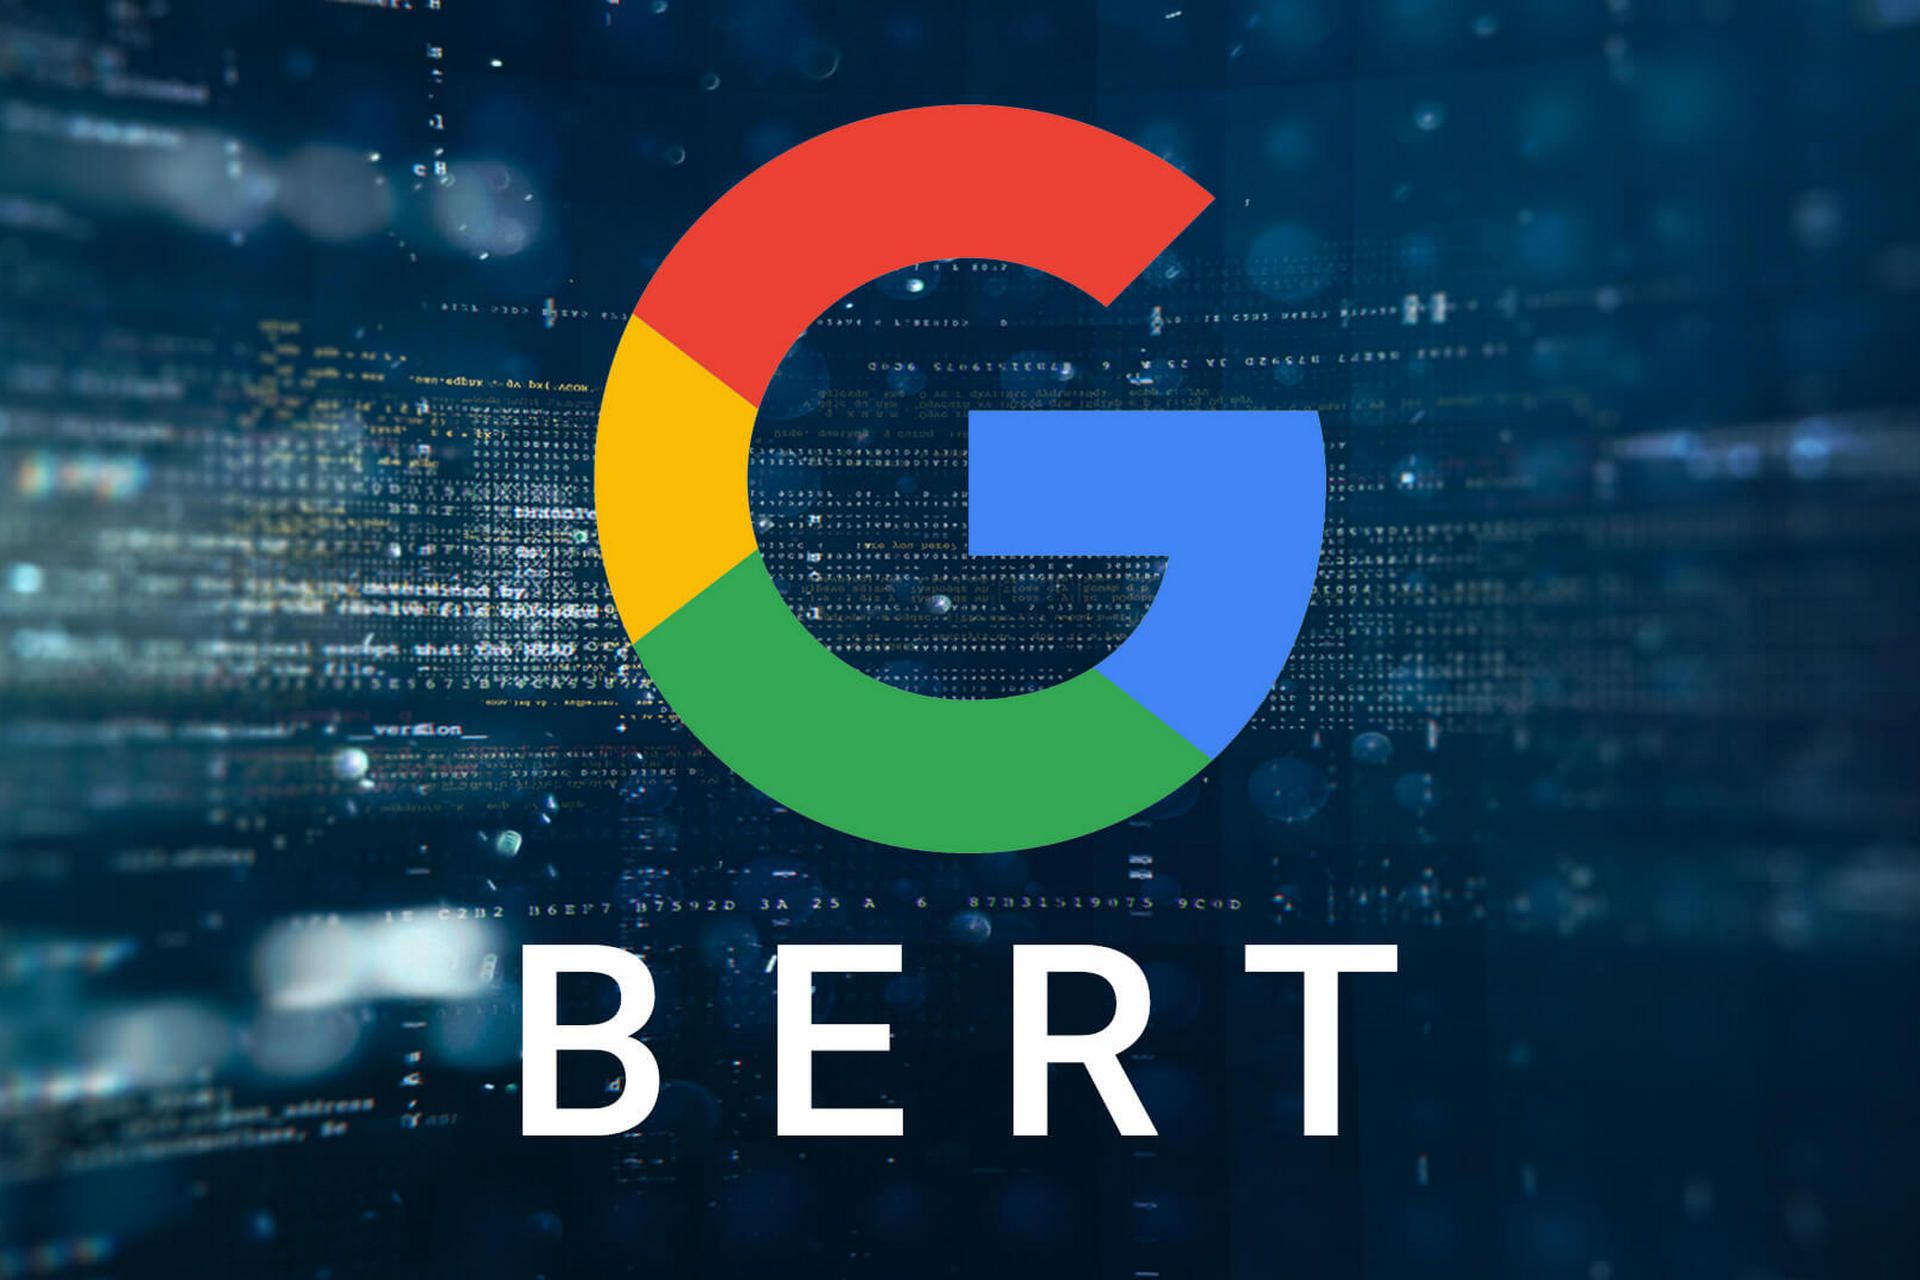 Да здравствует искусственный интеллект! Google презентовал поисковый алгоритм BERT - Интернет-маркетолог Владислав Решетилов